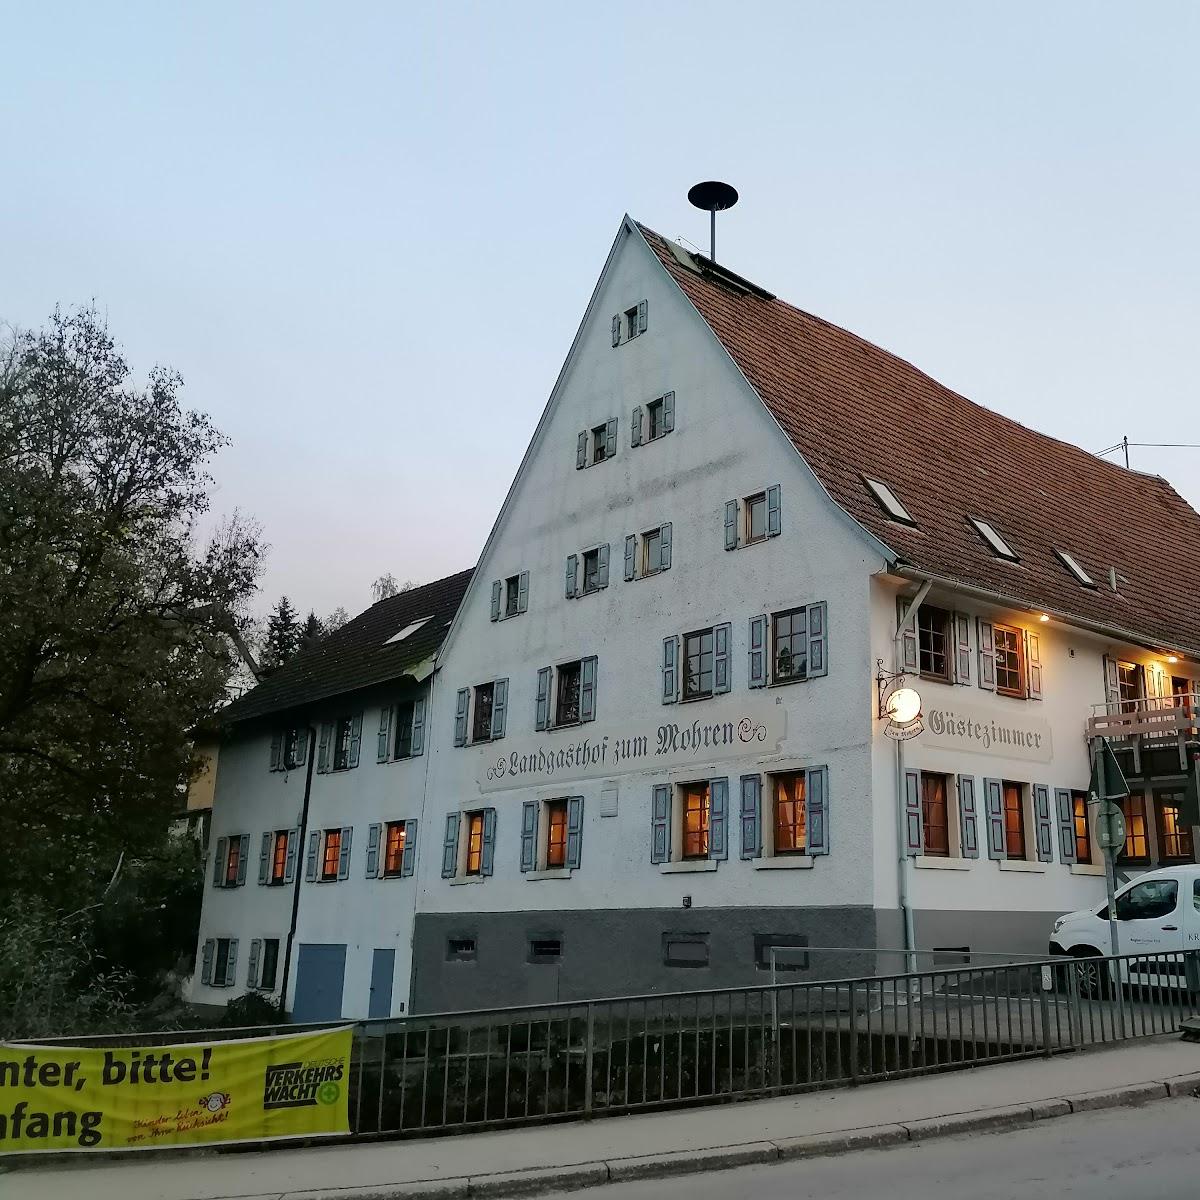 Restaurant "Landgasthof zum Mohren dalla Nonna" in Niedereschach